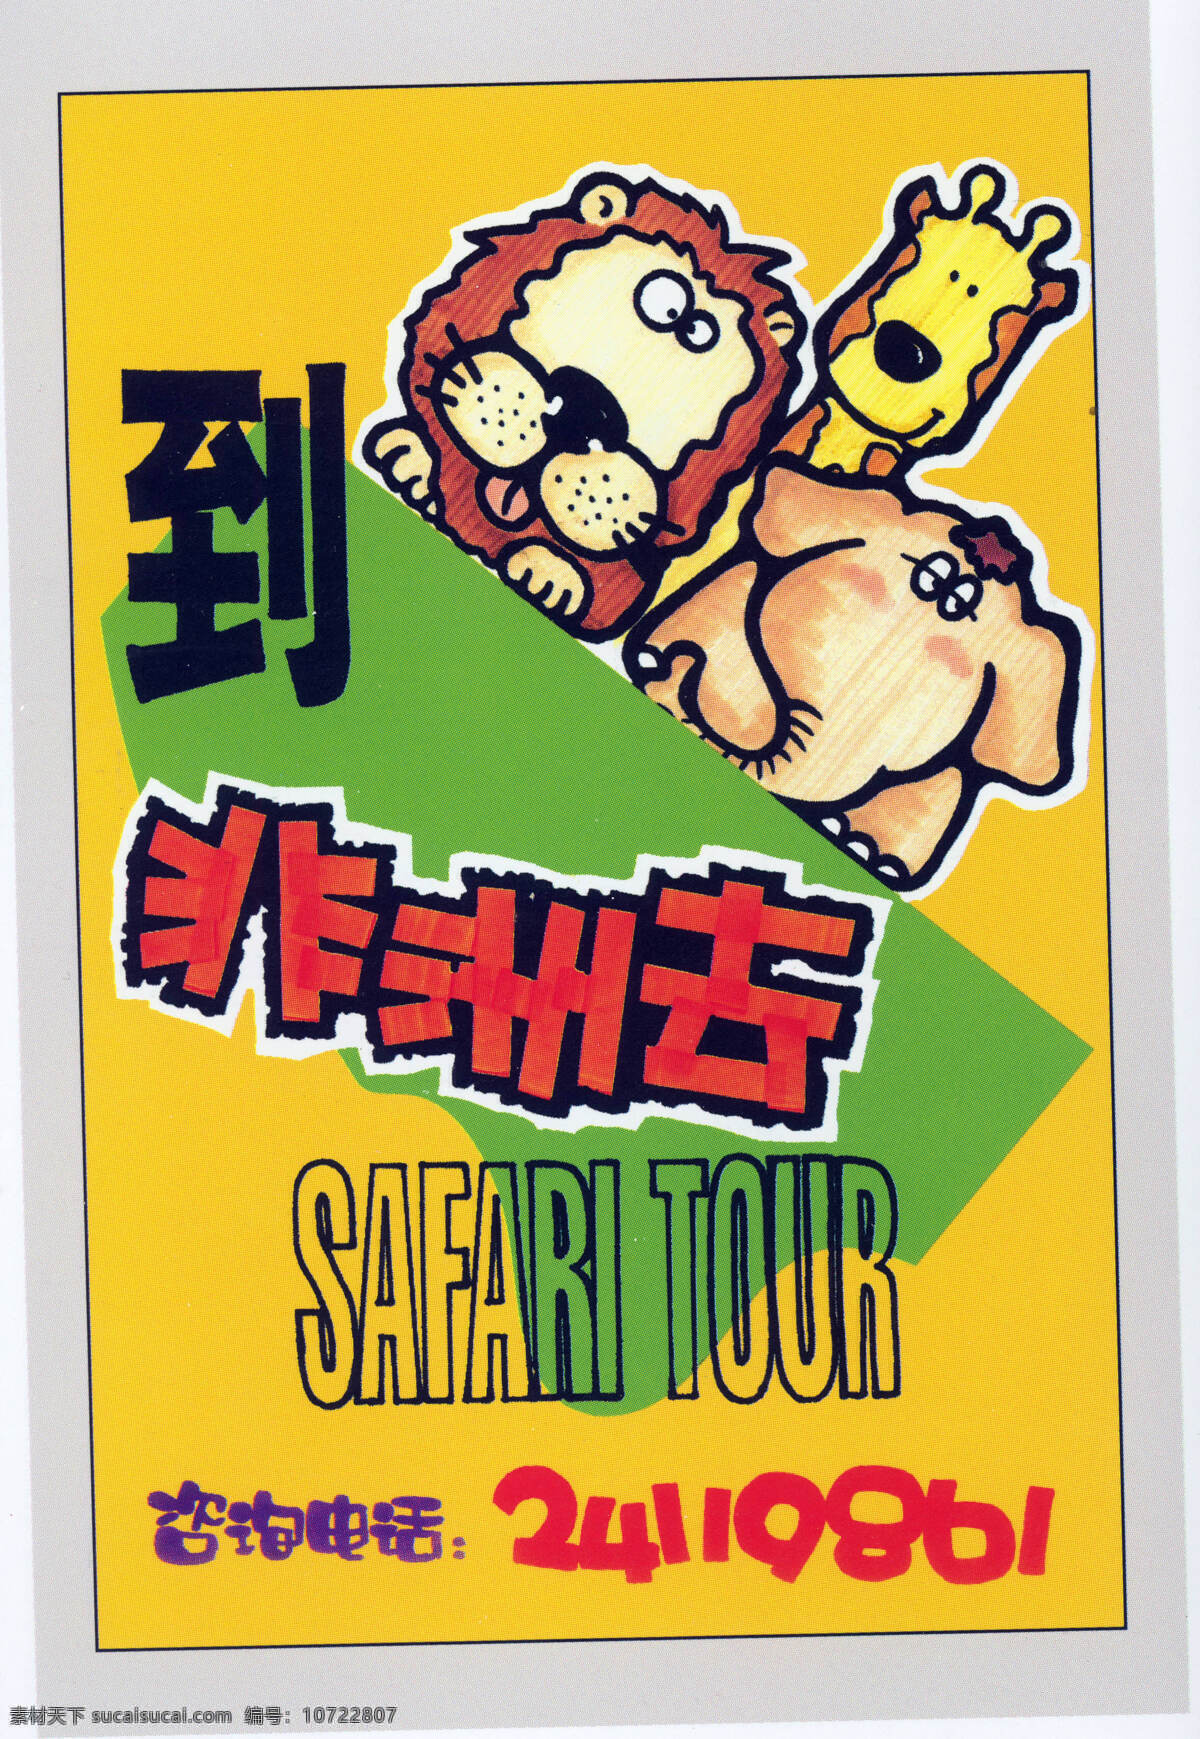 旅游观光 pop海报 平面设计 设计素材 黄色